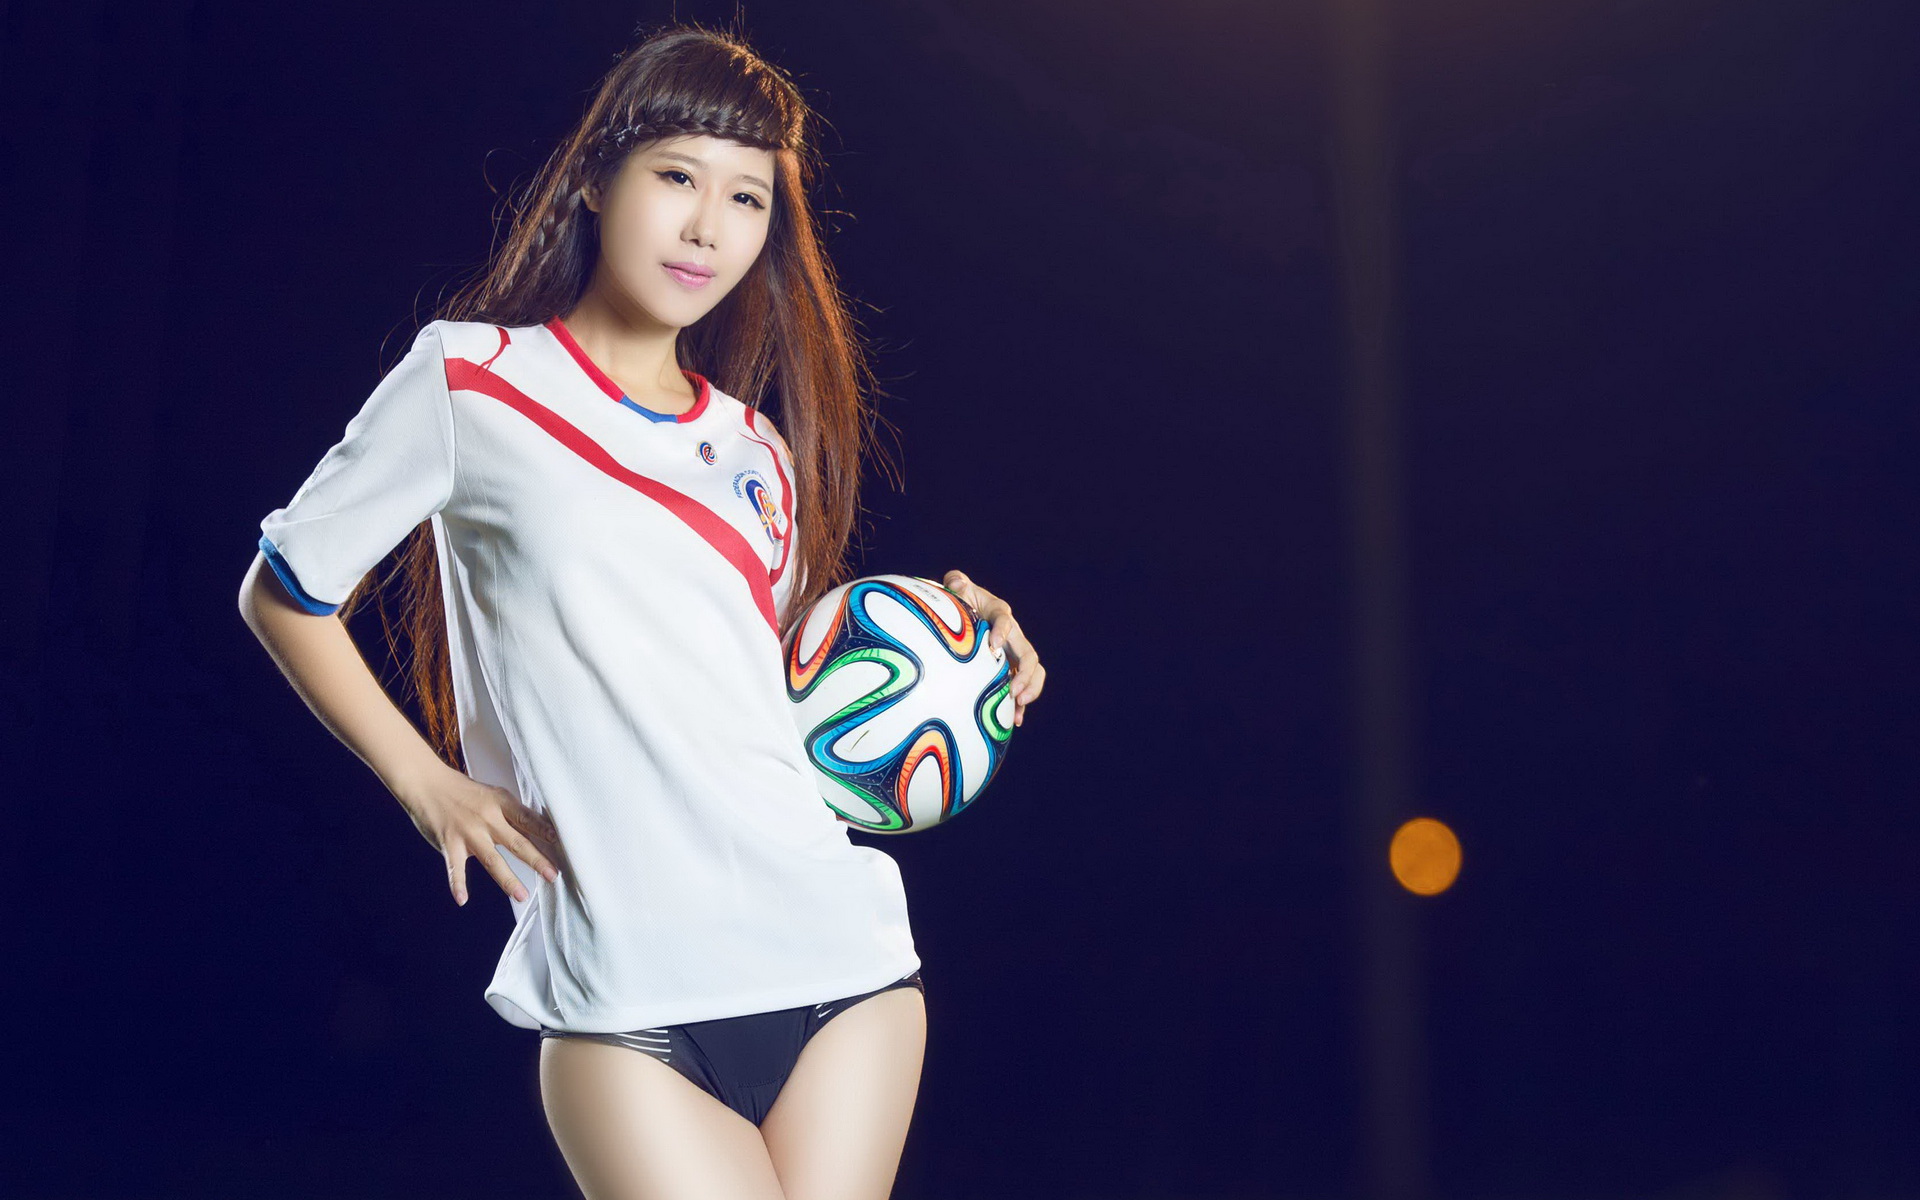 2014年巴西世界杯32强队足球宝贝美女模特宽